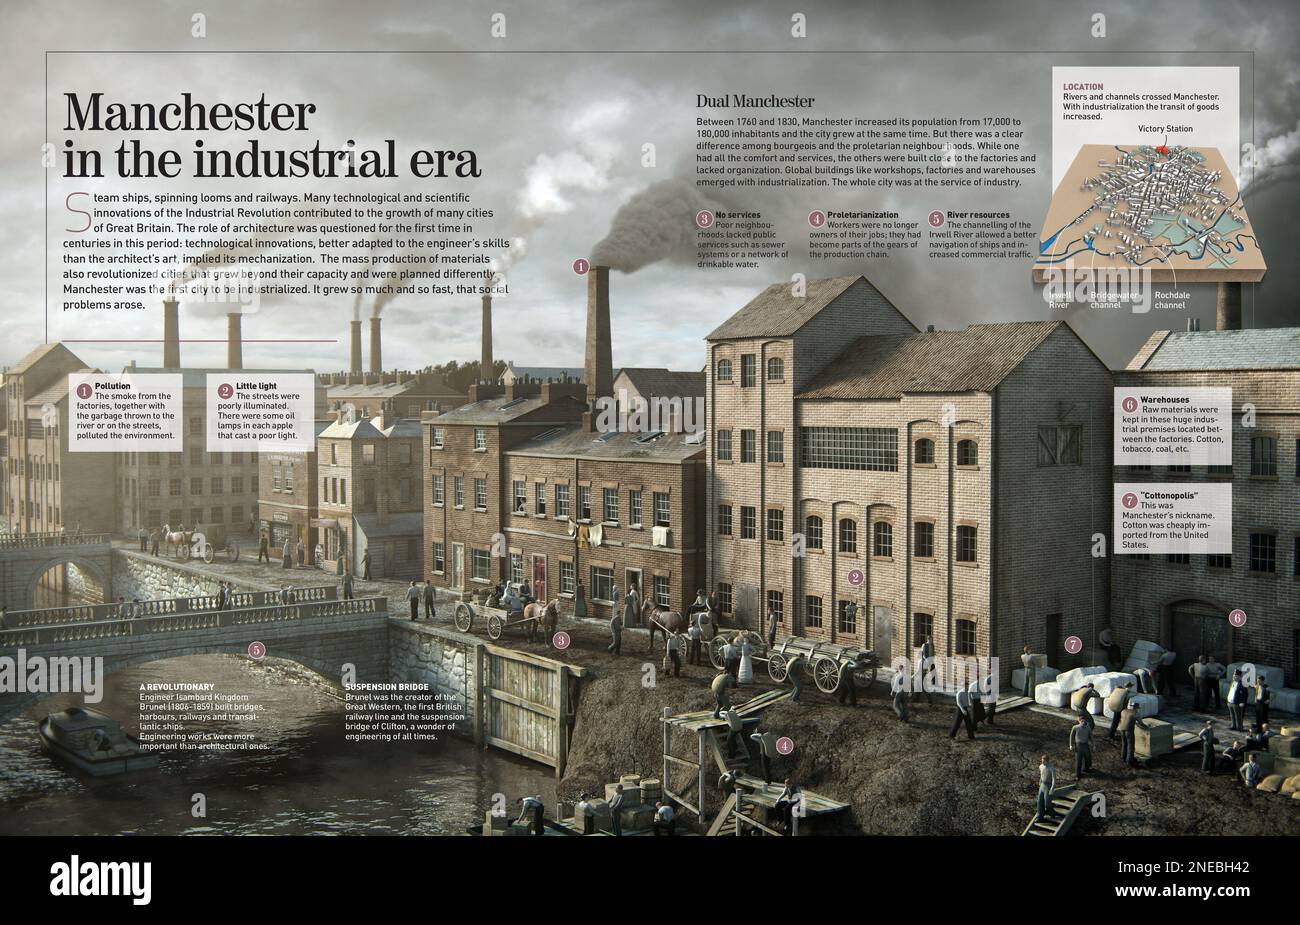 Infografía sobre la ciudad de Manchester, Inglaterra, durante la Revolución Industrial en el siglo 18th. [Adobe InDesign (.indd); 4960x8503]. Foto de stock